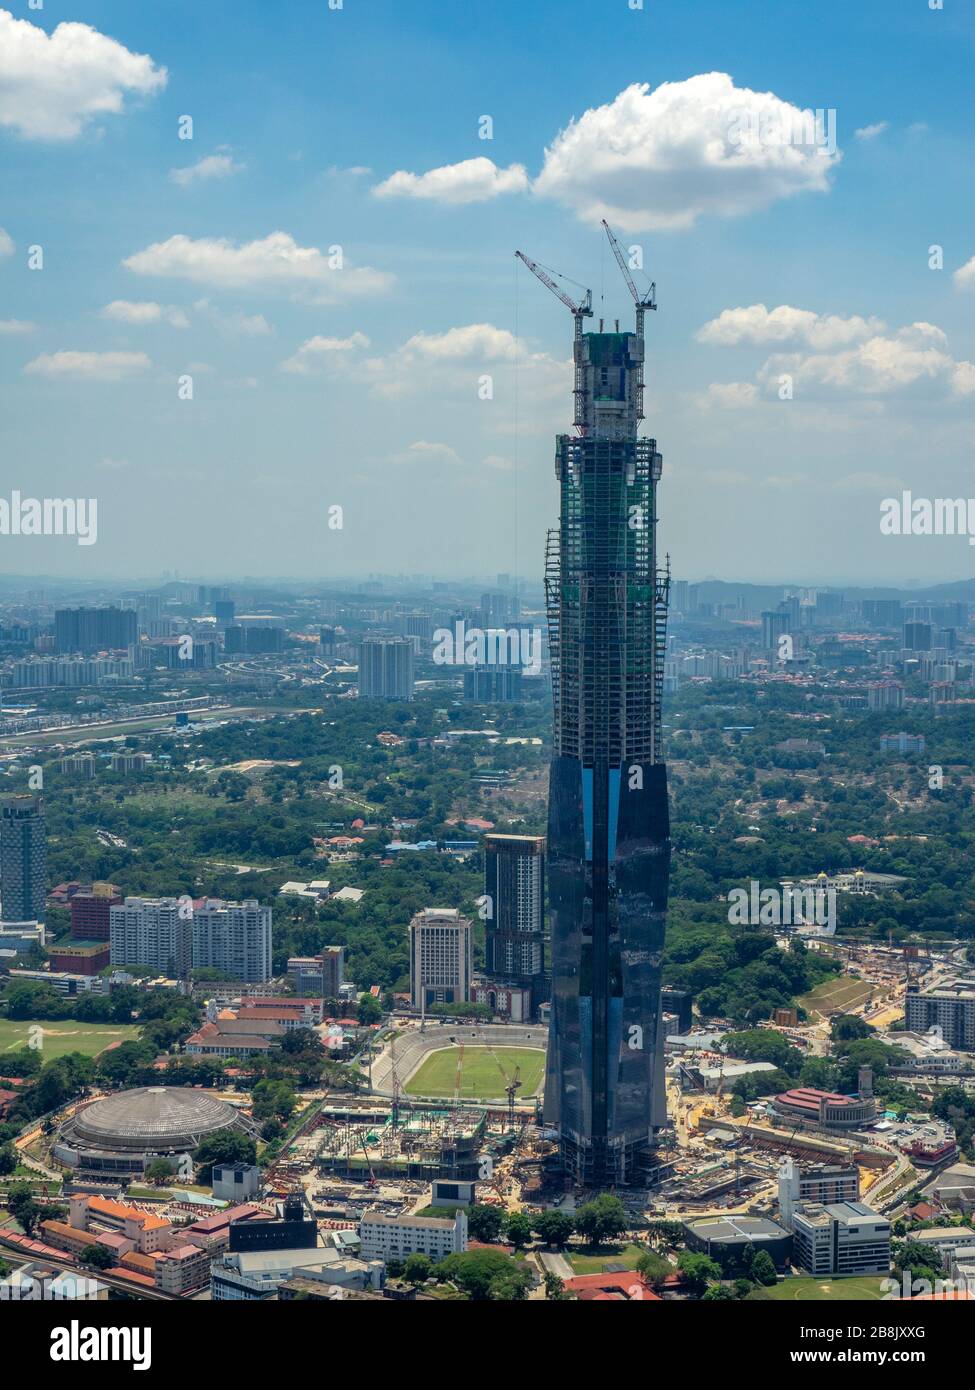 La tour de bureaux Merdeka 118 en construction le plus haut gratte-ciel de Kuala Lumpur en Malaisie. Banque D'Images